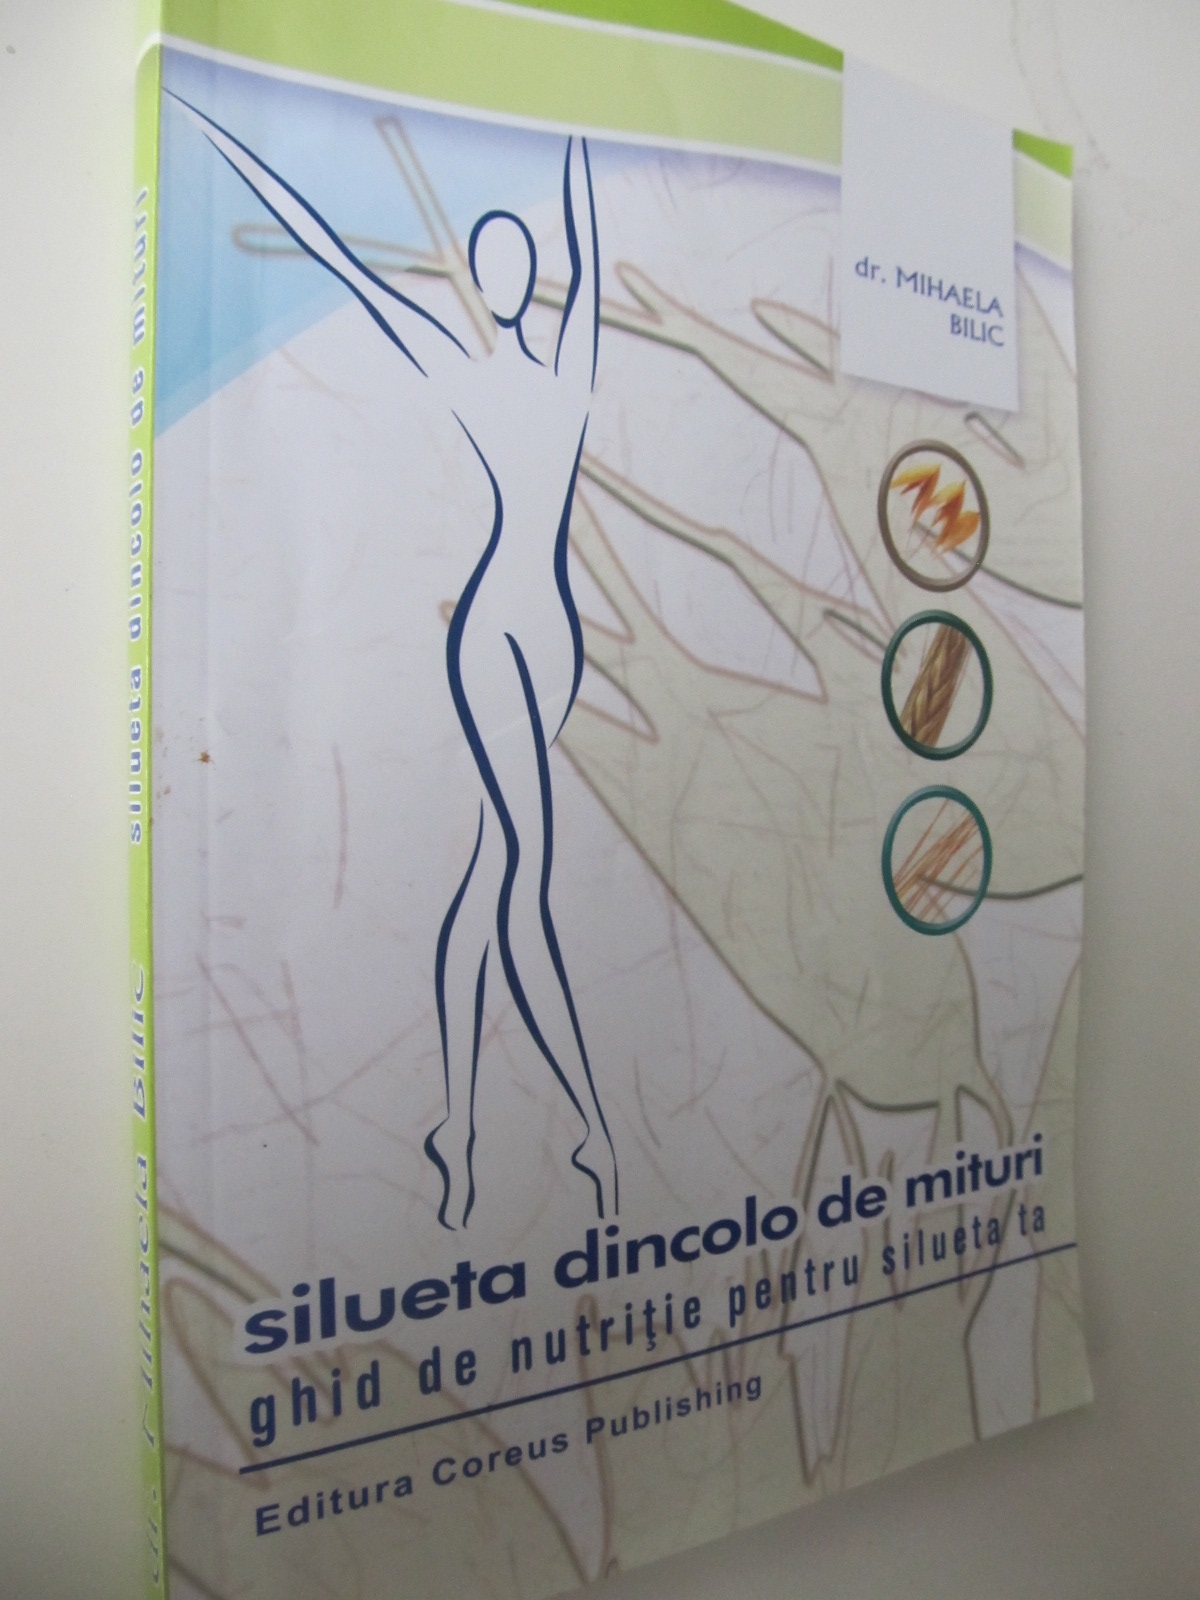 Silueta dincolo de mituri - ghid de nutritie pentru silueta ta - Mihaela Bilic | Detalii carte